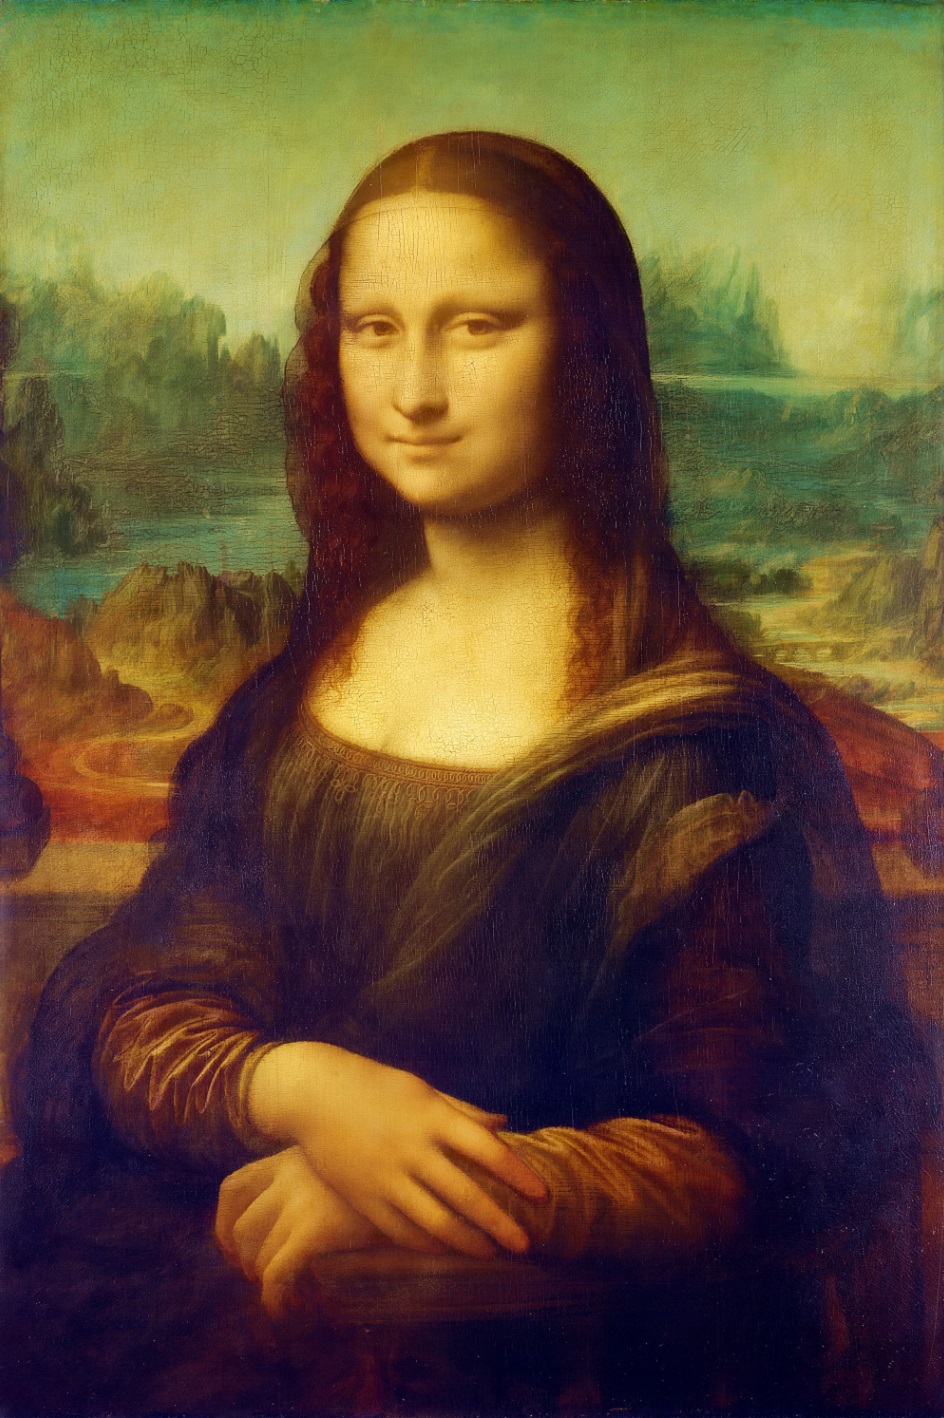 Пейзаж в живописи. Фоновый пейзаж в картинах Высокого Возрождения. Леонардо да Винчи. «Мона Лиза»